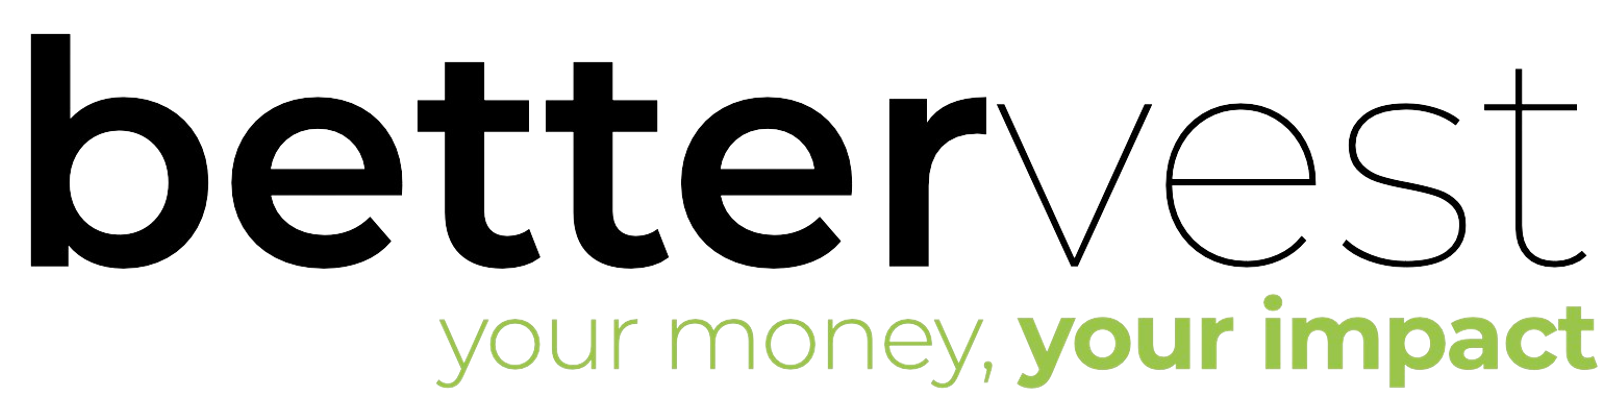 bettervest logo